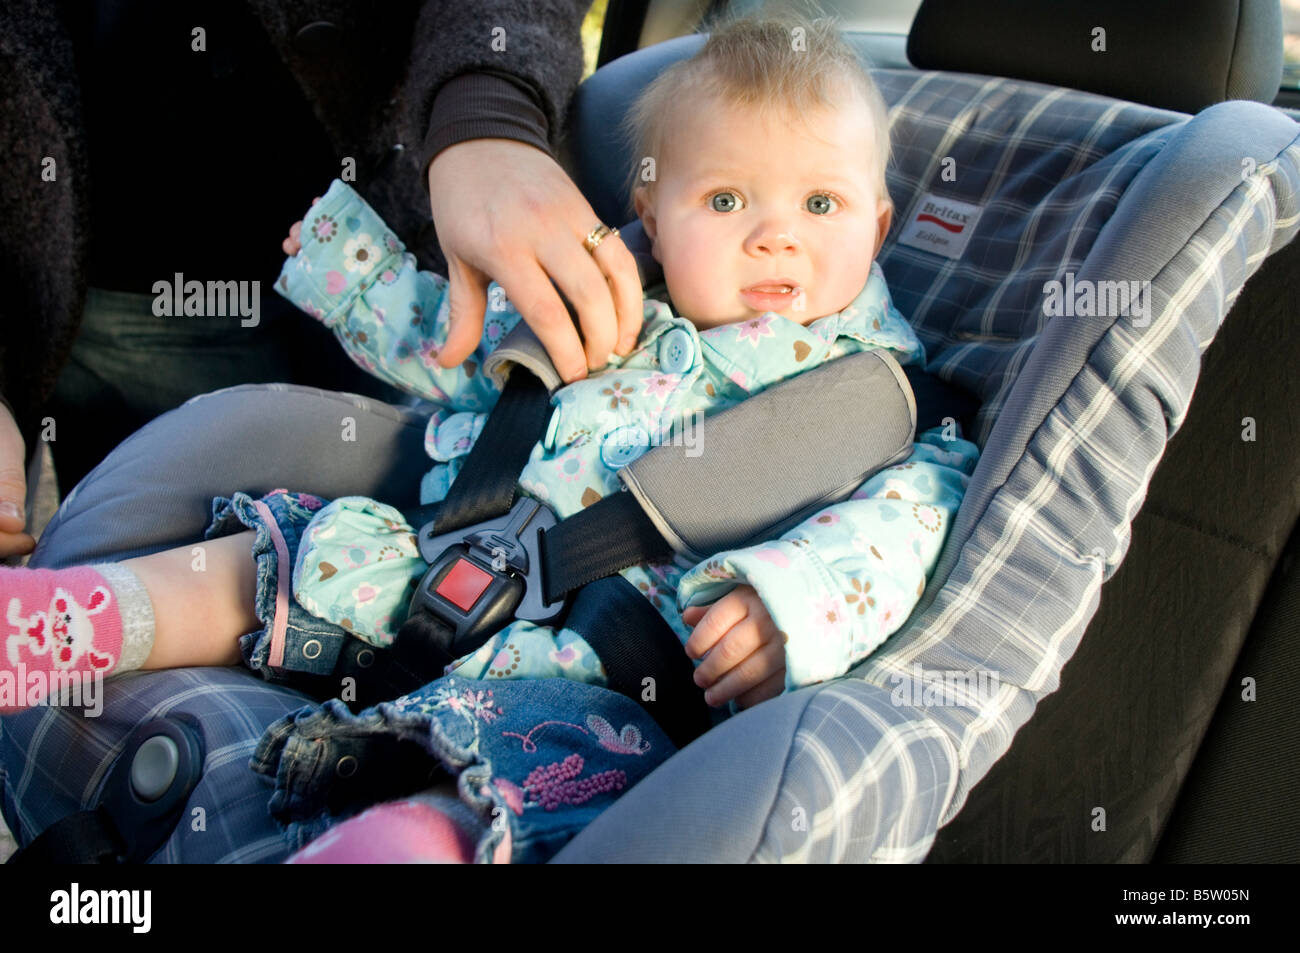 Kind Sitz Kind Baby Auto in Sicherheit sicher angeschnallt Gurt  Sicherheitsgurt Gurt Kinderstuhl Stuhl Gurt Isofix Zubehör Unfall cr  Stockfotografie - Alamy